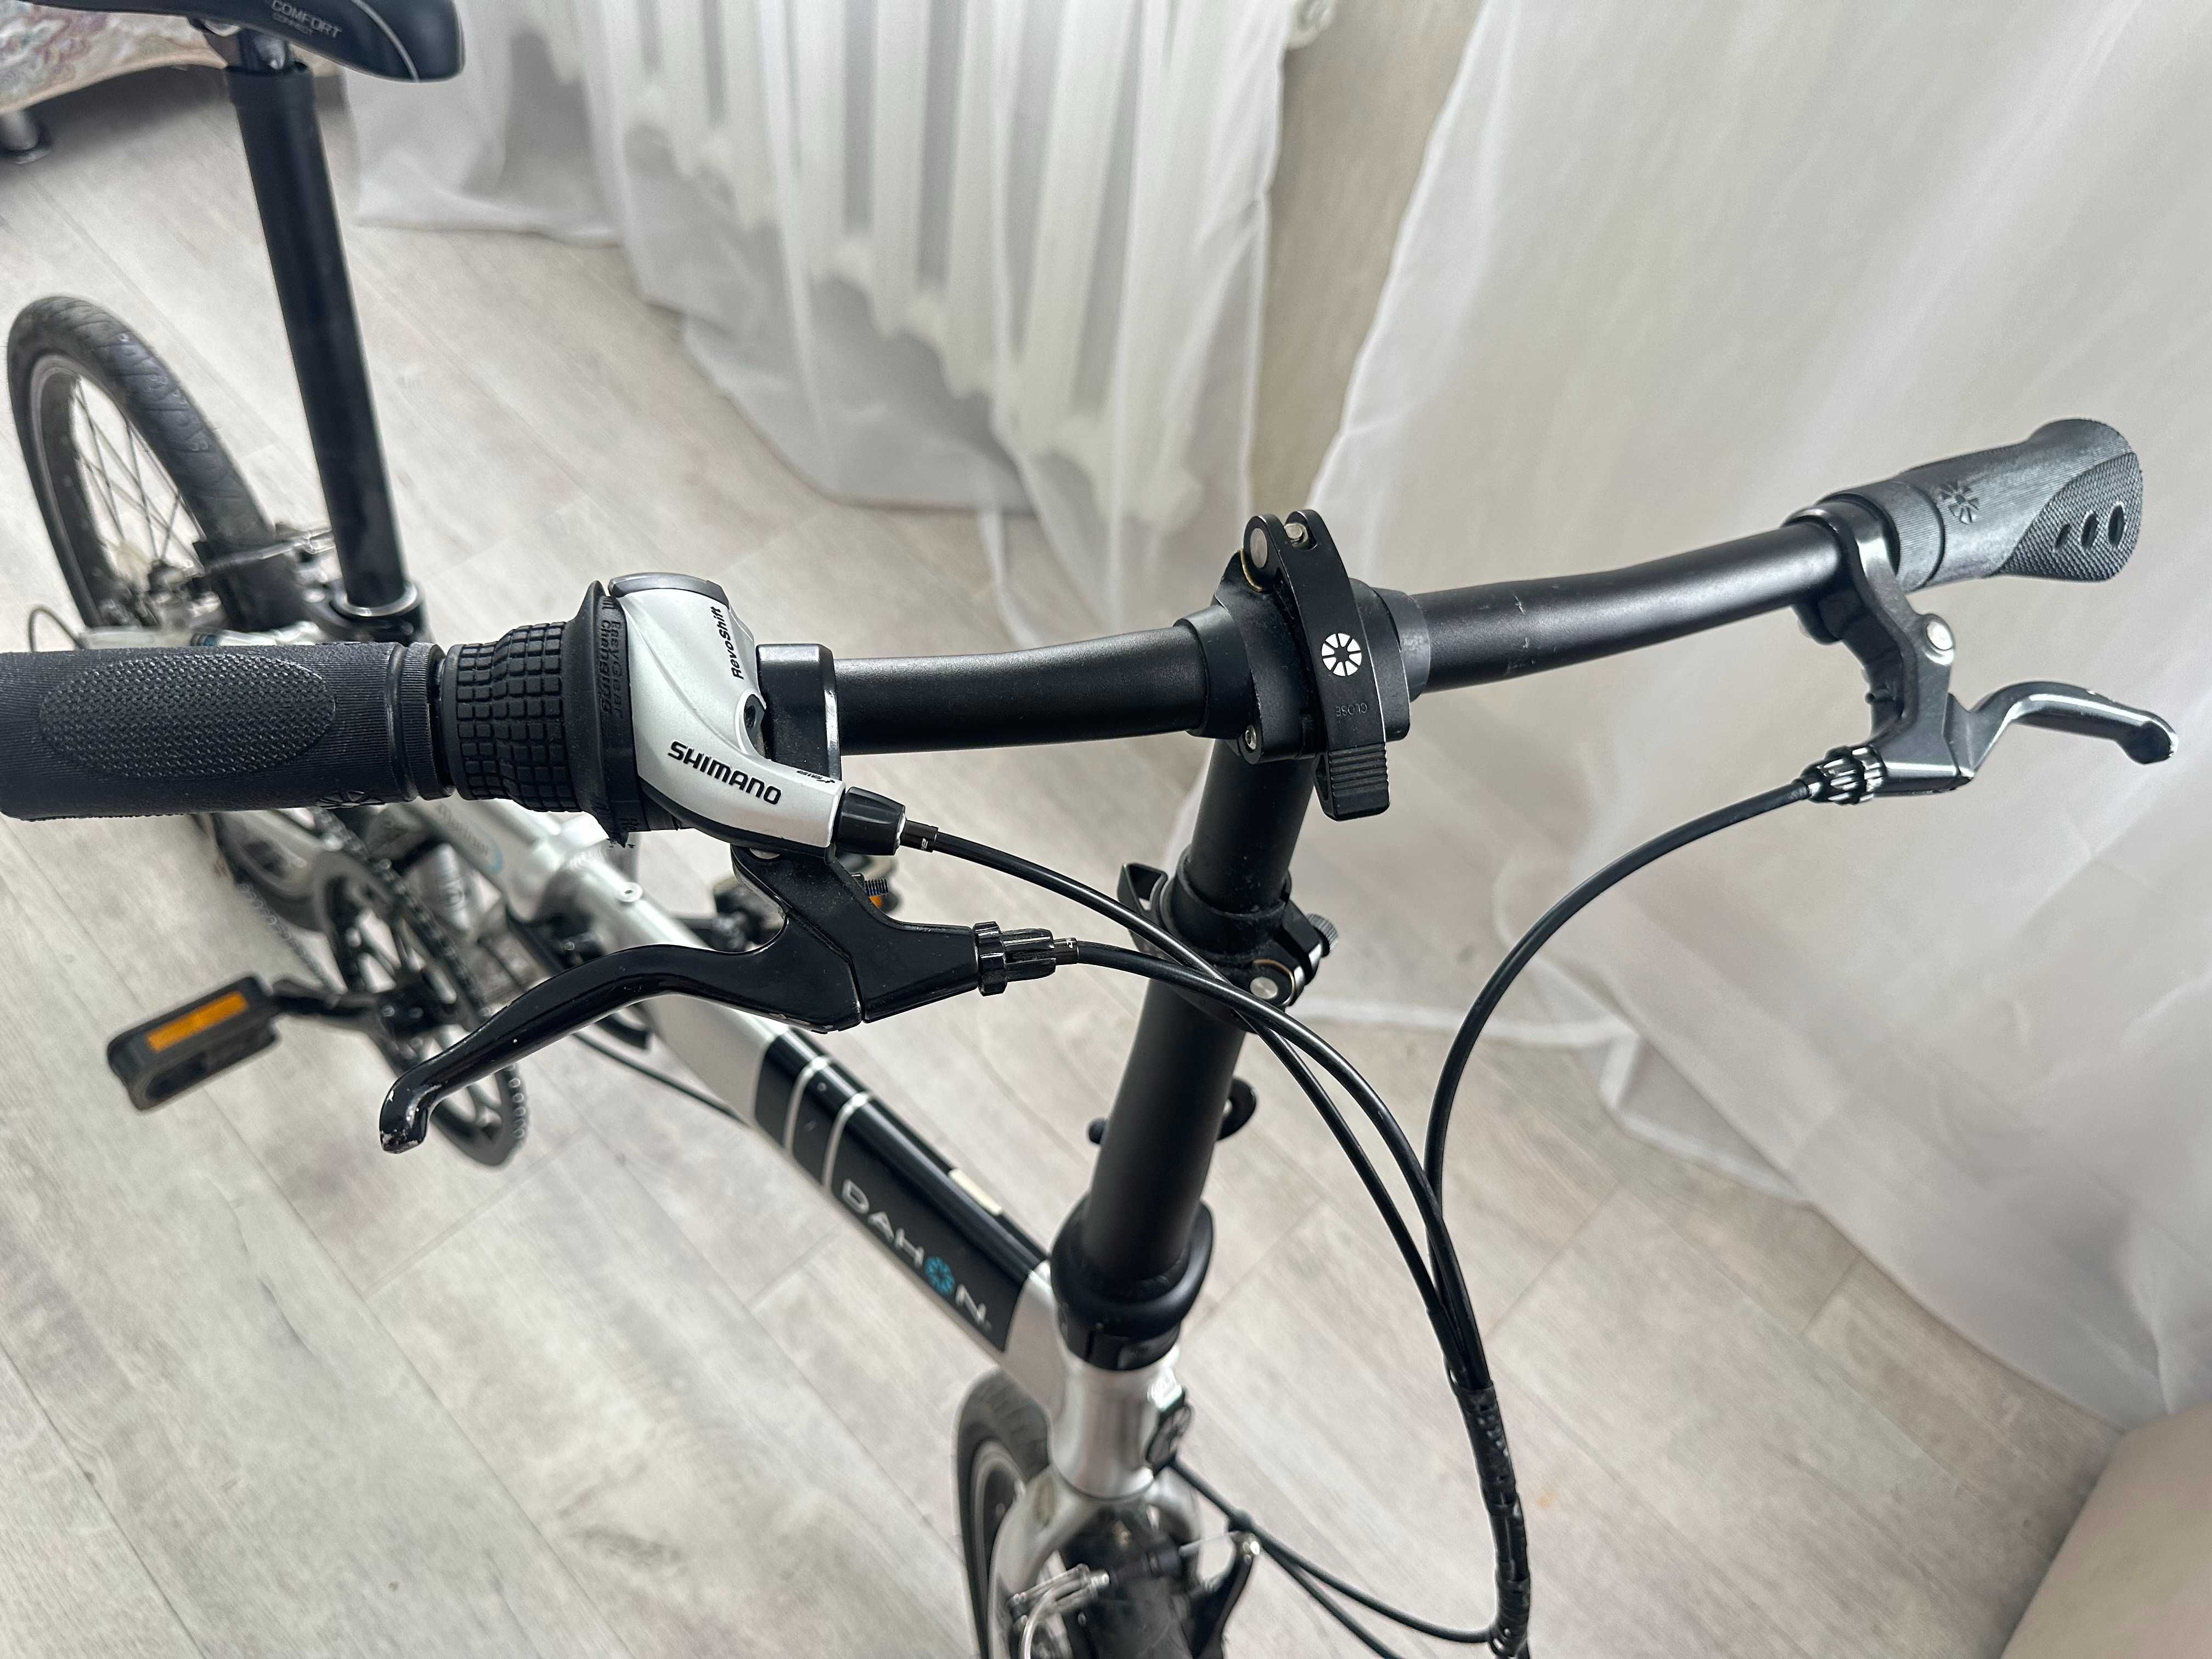 Продается велосипед Dahon Mariner D8